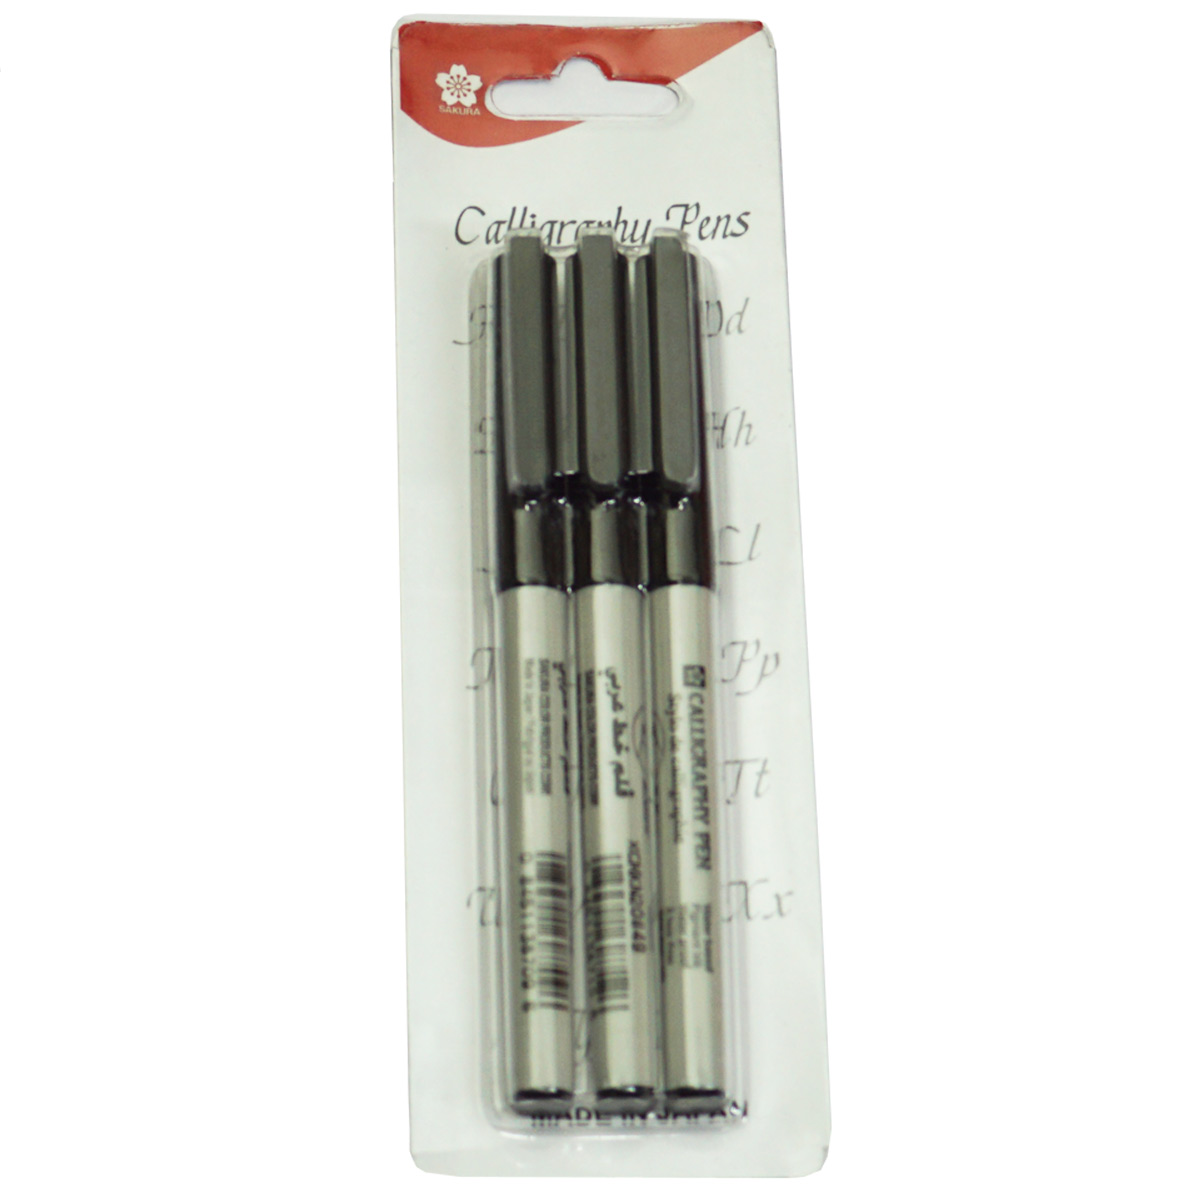 Sakura 1.0mm 2.0mm 3.0mm Tip  Black Color Calligraphy 3 Pen Set SKU 23306